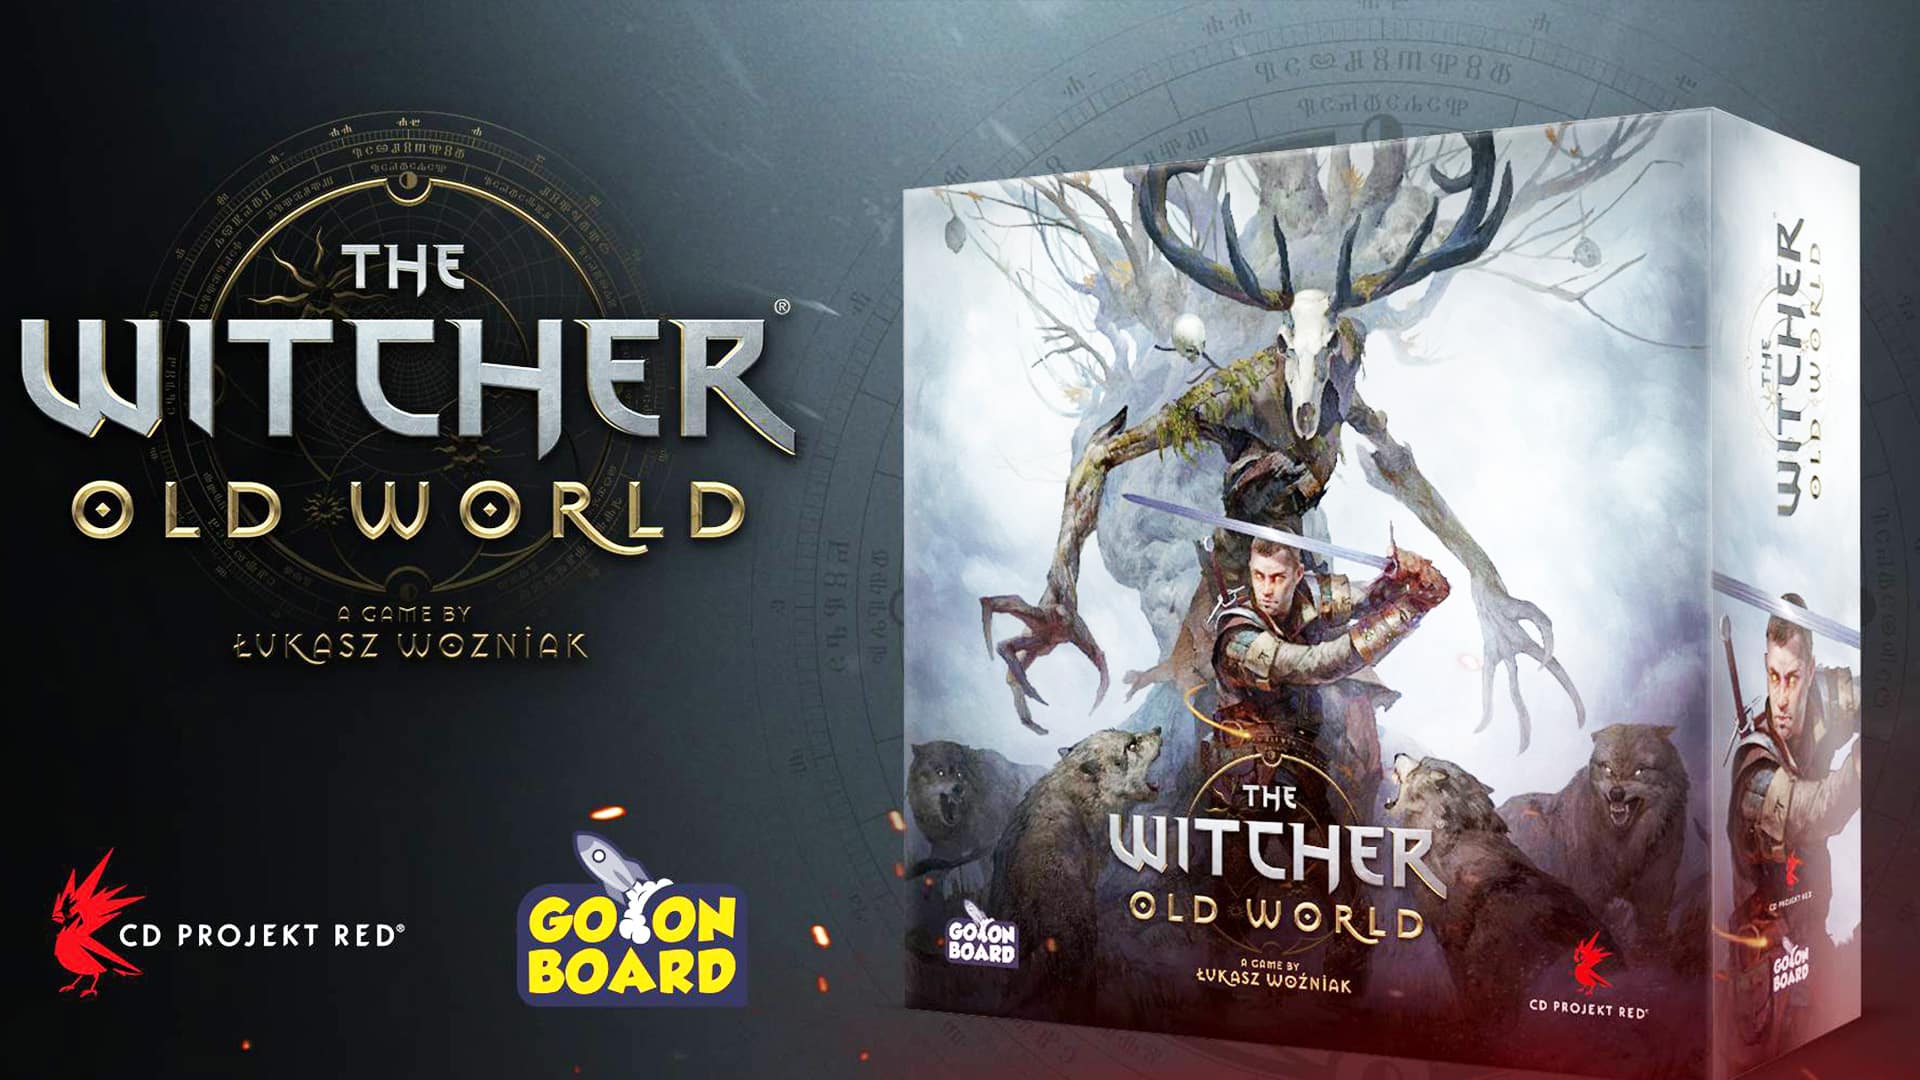 The Witcher, The Witcher Old World, The Witcher Gioco da Tavolo, The Witcher Fumetti, CD Projekt Red